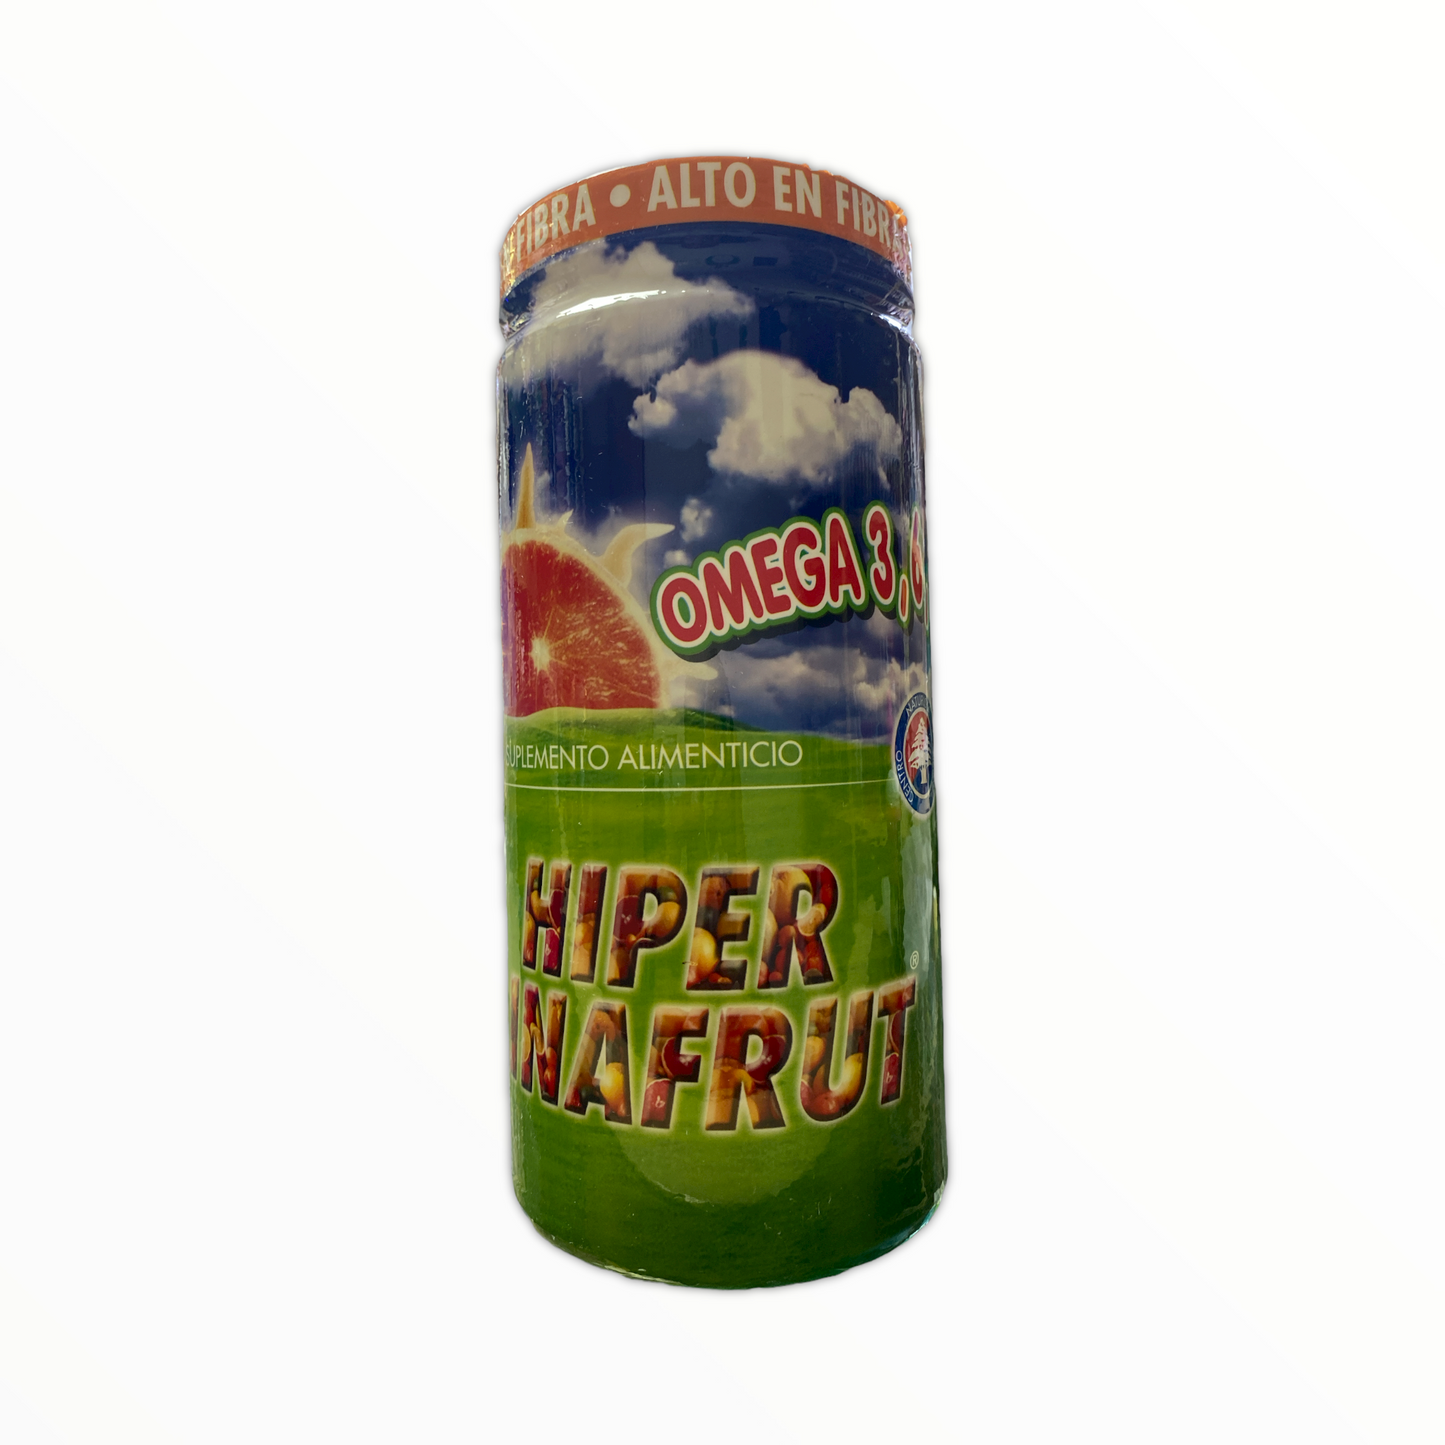 Fibra Hiperlinafrut 500 g Marury